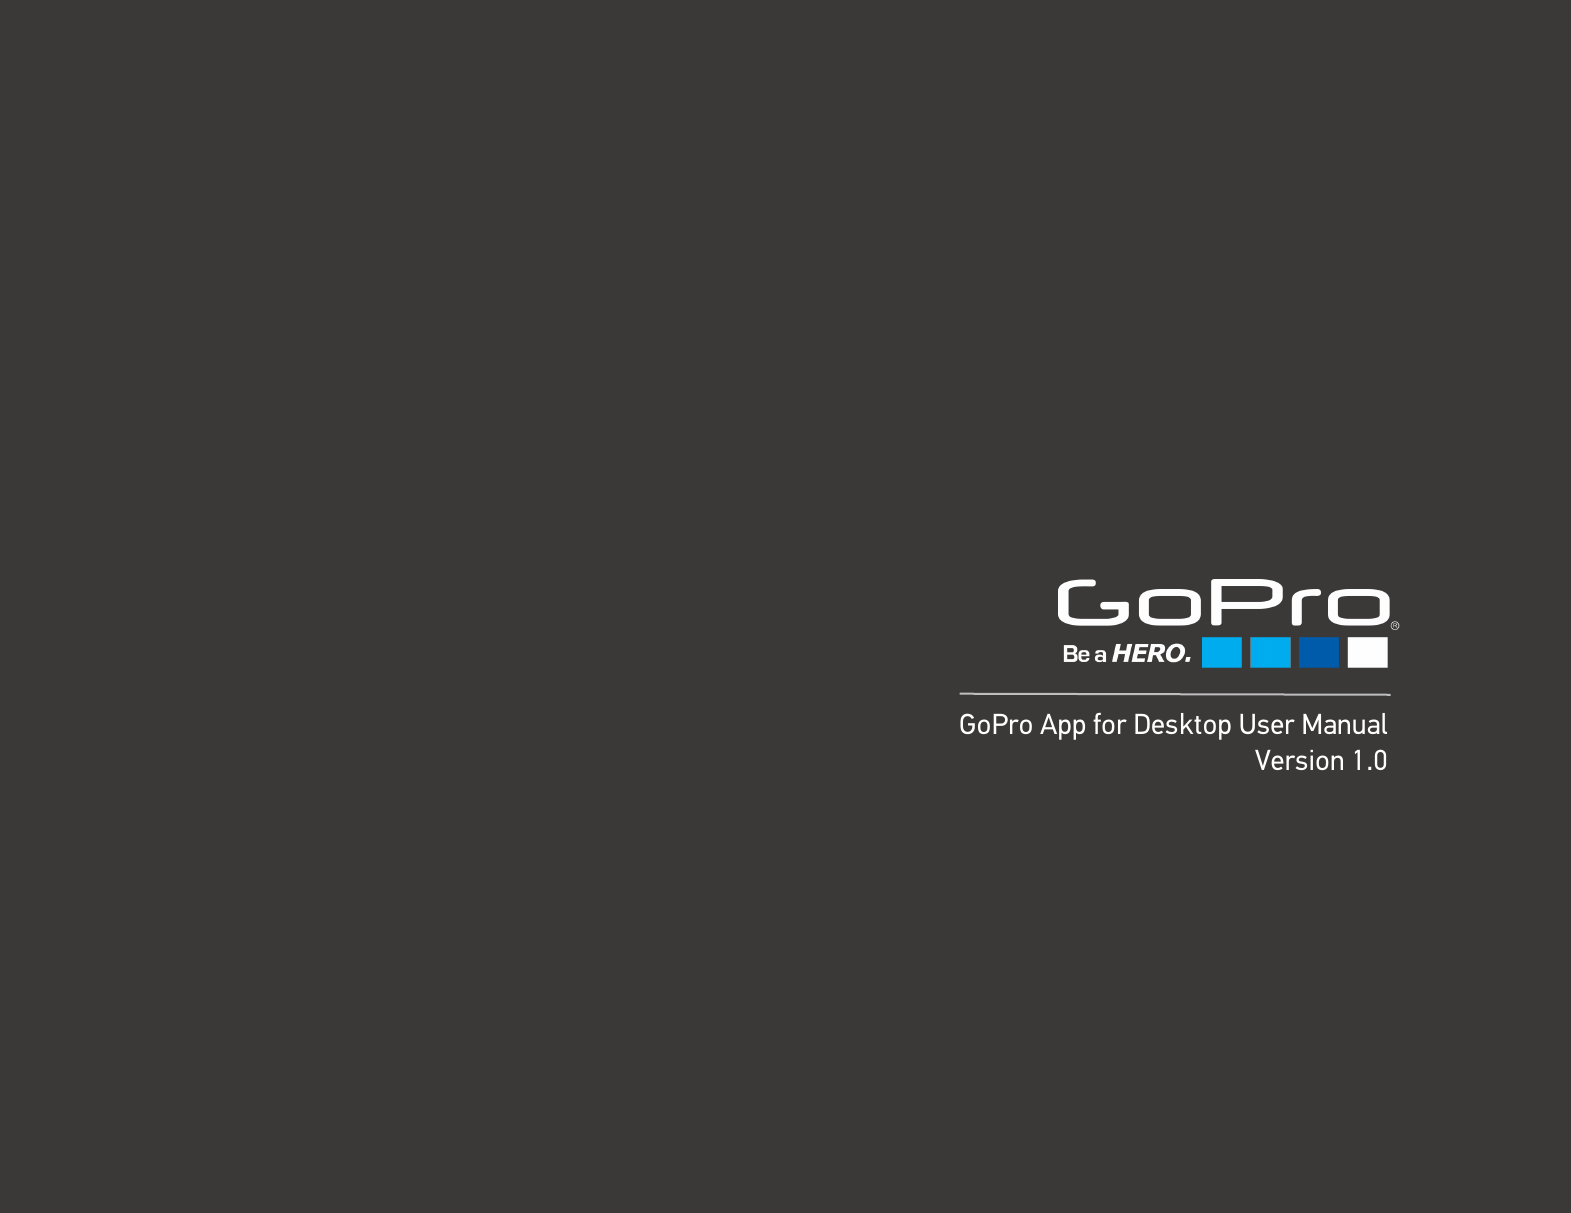 Gopro studio manual mac pdf reader